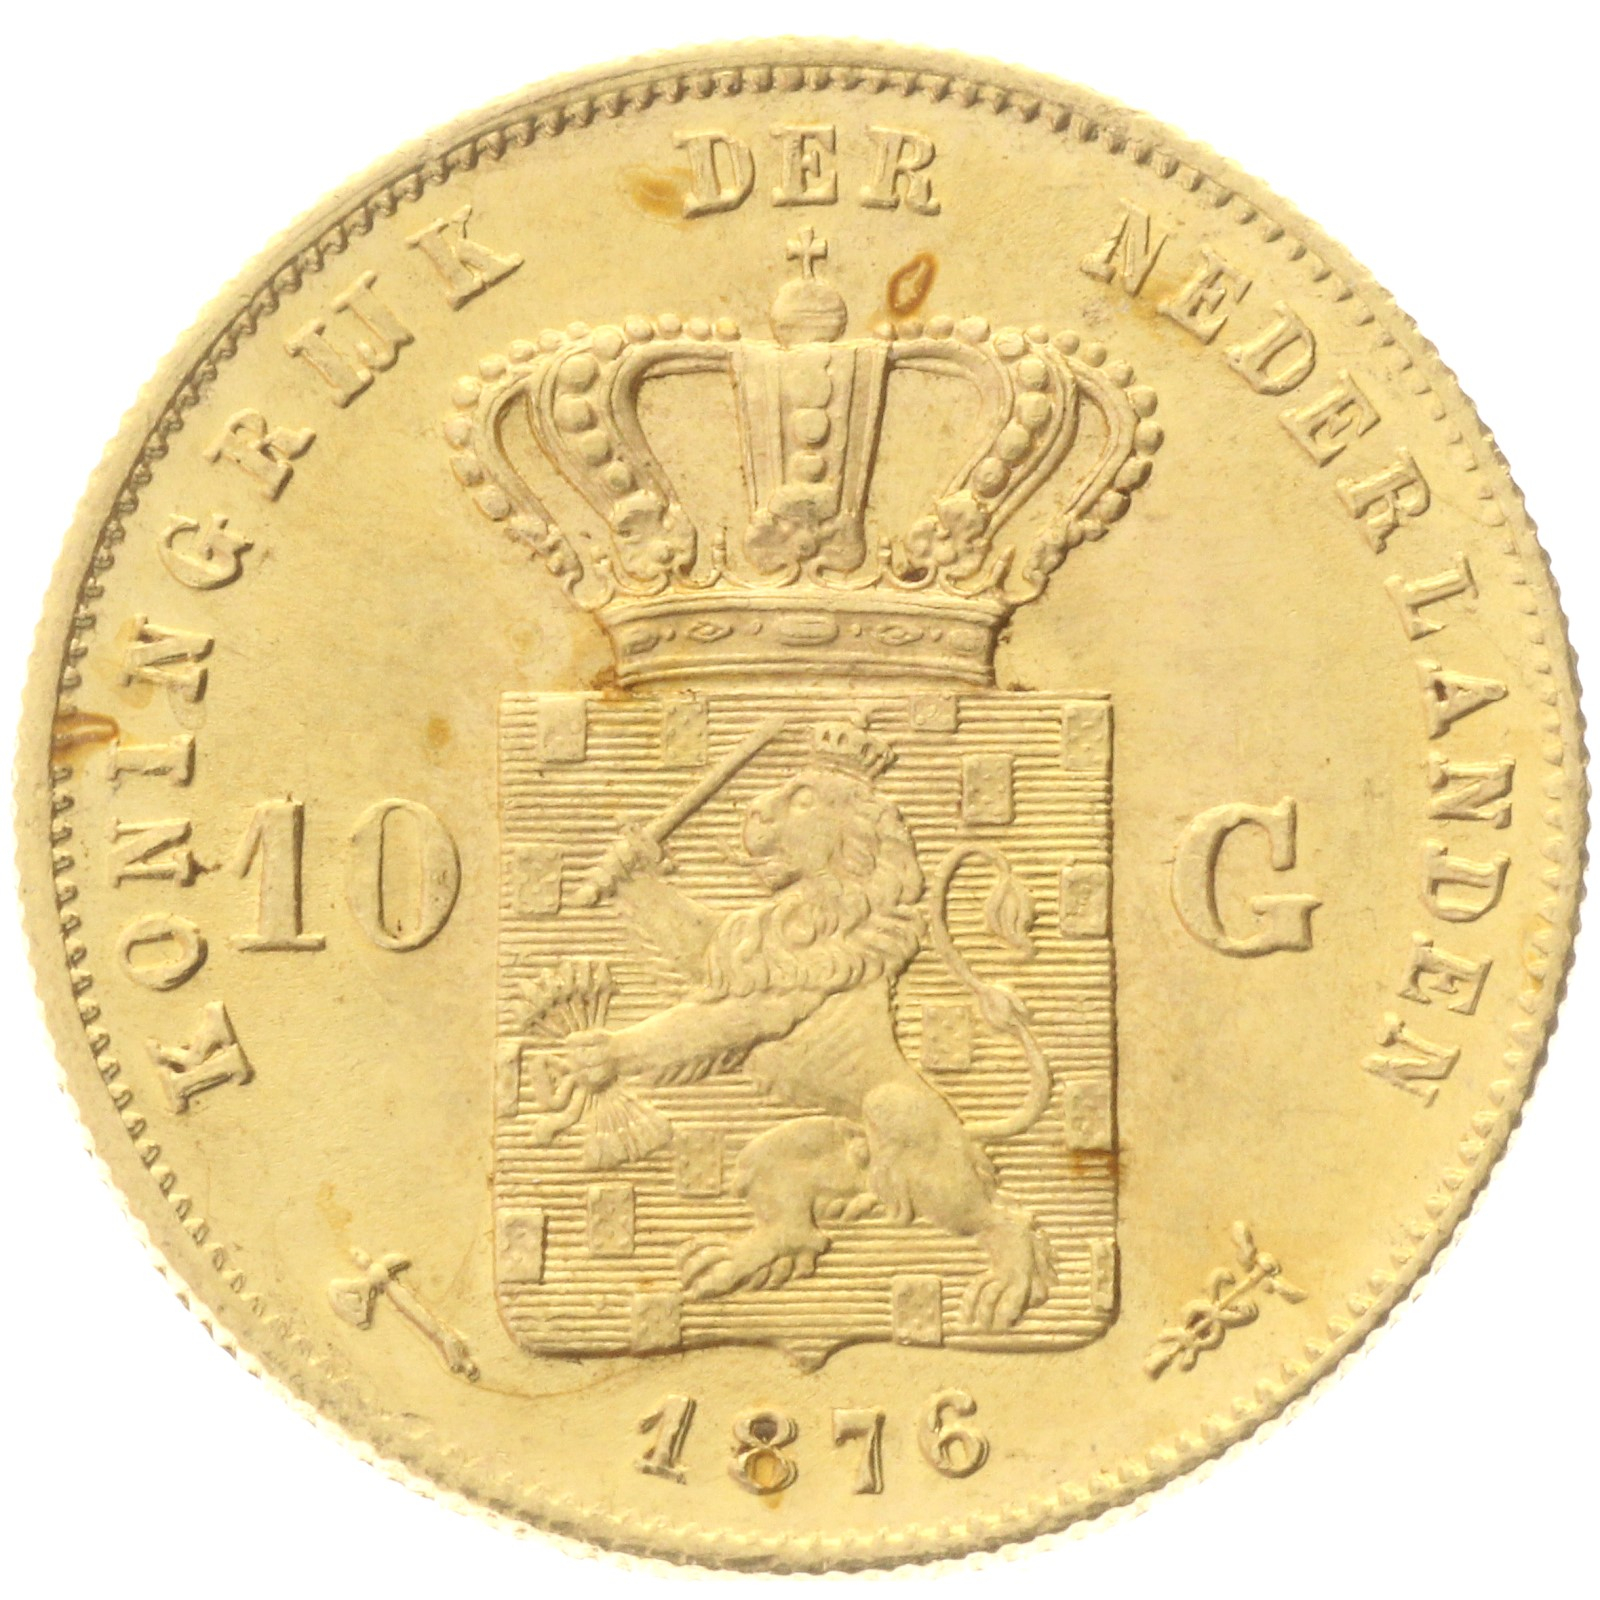 Netherlands - 10 gulden - 1876 - William III